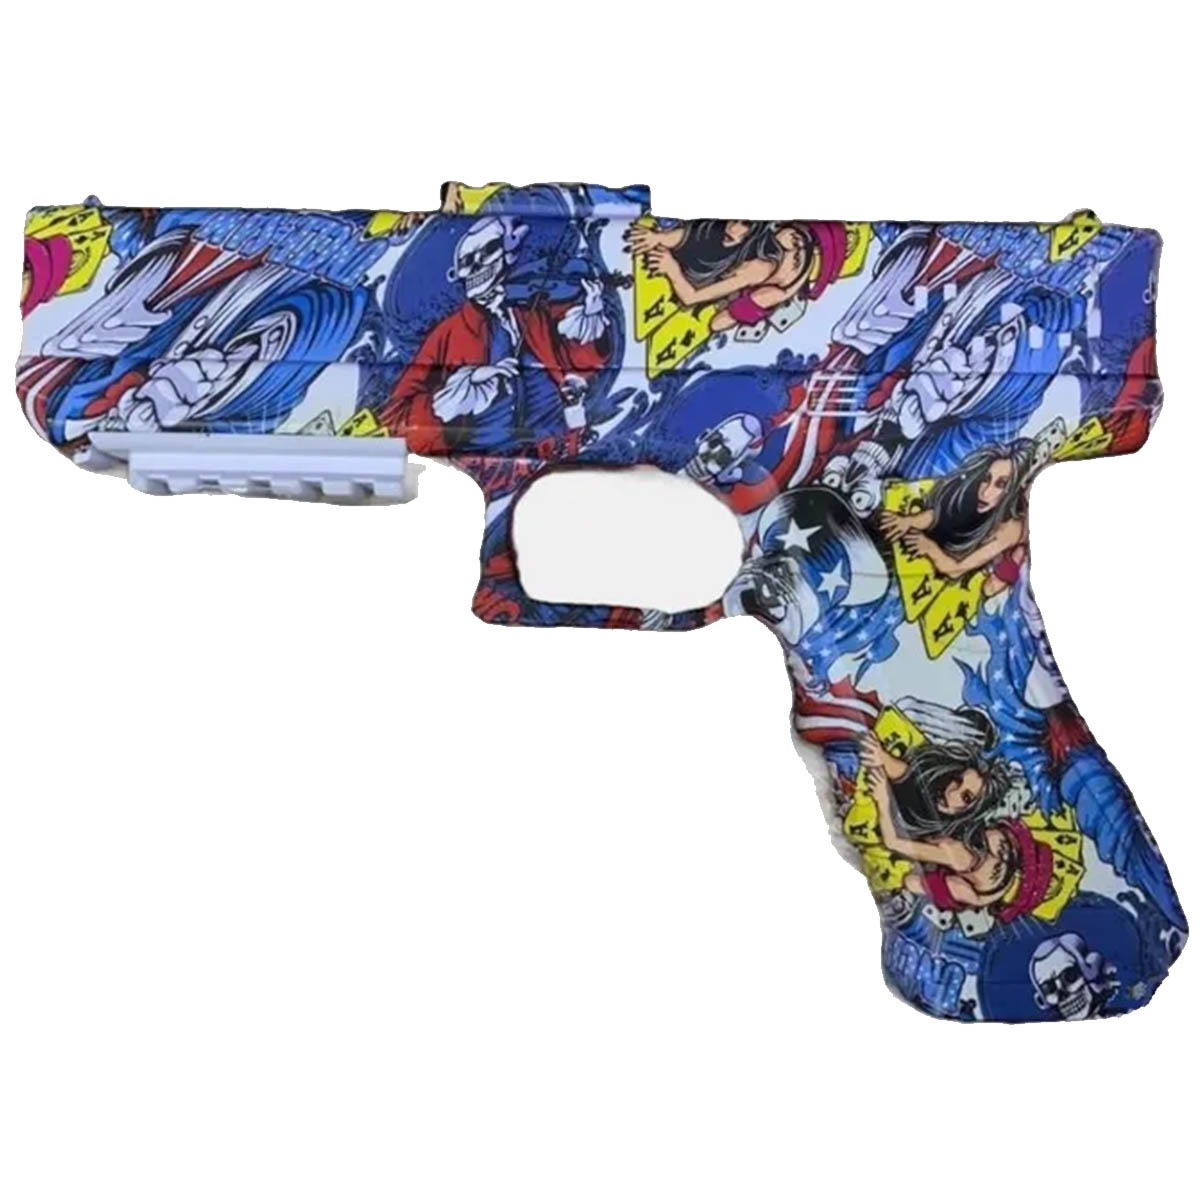 Электрический пистолет - игрушка Water Bomb Gun, орбизы, лазерный прицел, рисунок граффити